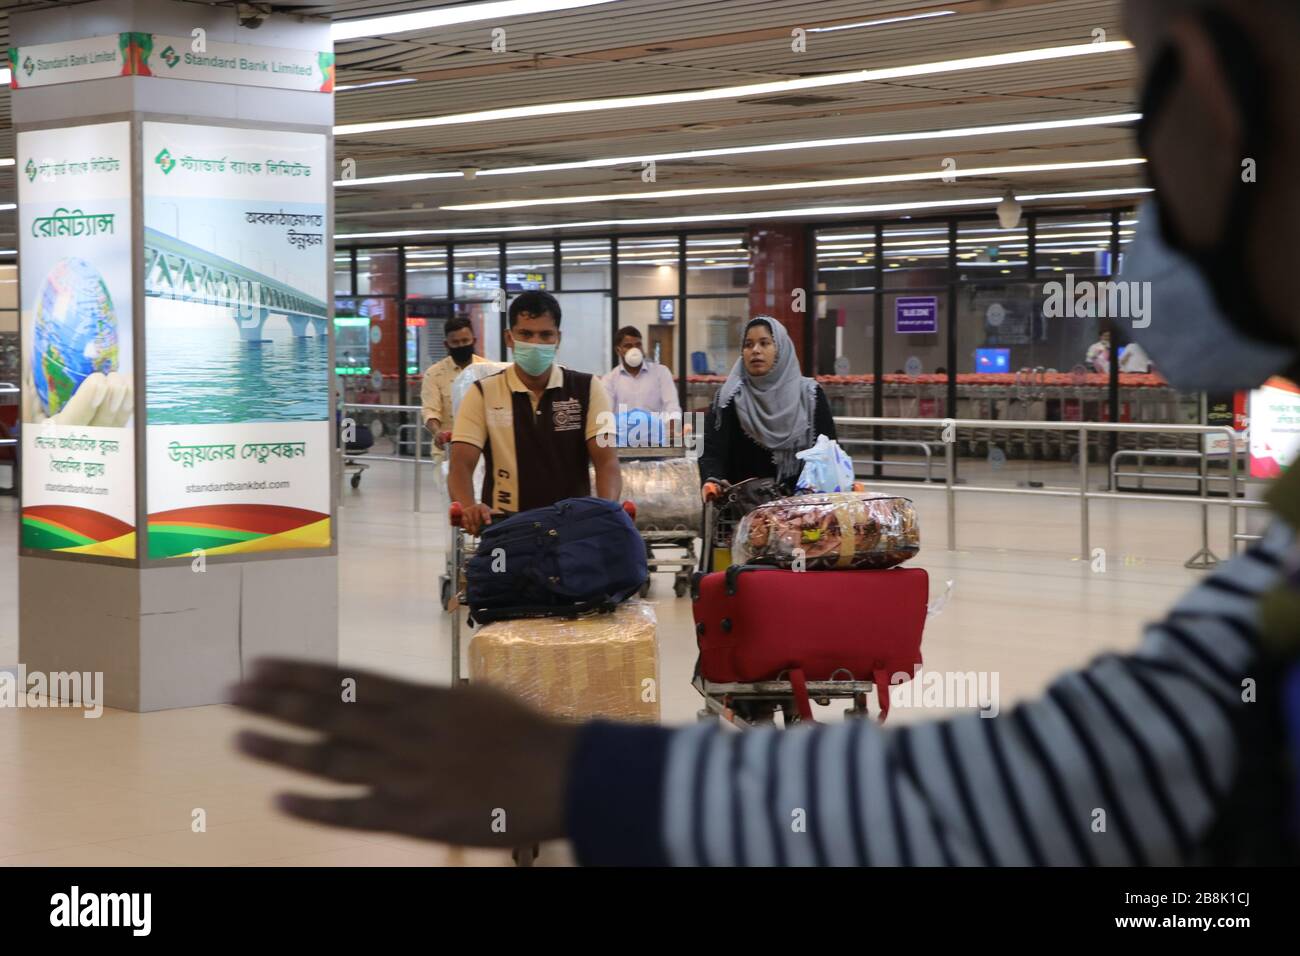 Covid, 19 13. märz 2020 der internationale Flughafen dhaka bangladesch Hazrat shahjalal in der Hauptstadt hat gestern fast ein verlassenes Aussehen als Frequenz-Flig Stockfoto